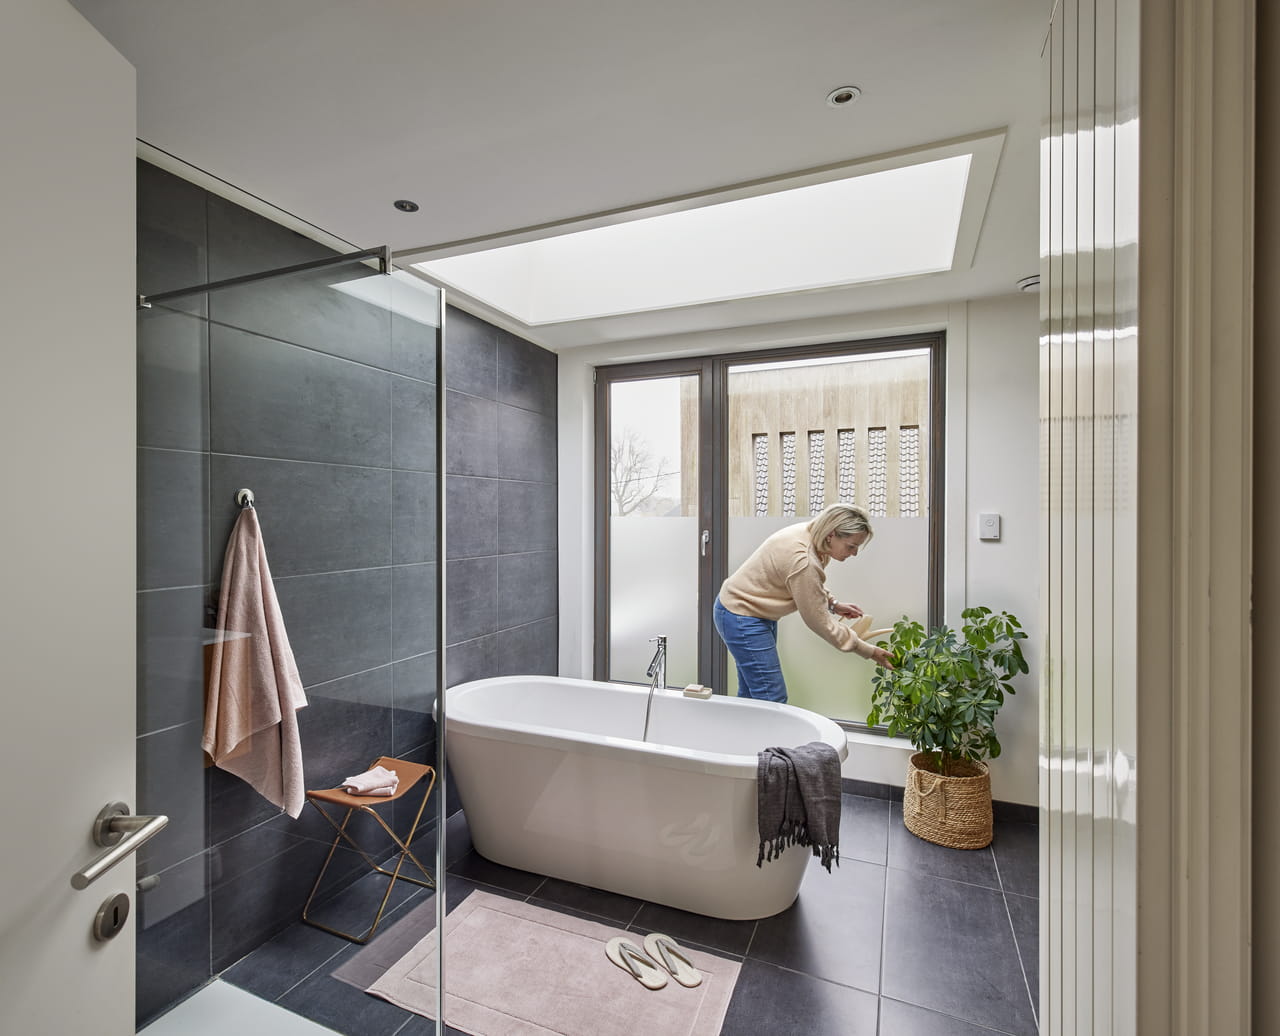 Moderne badeværelse med VELUX ovenlysvindue, fritstående badekar og person, der passer en plante.